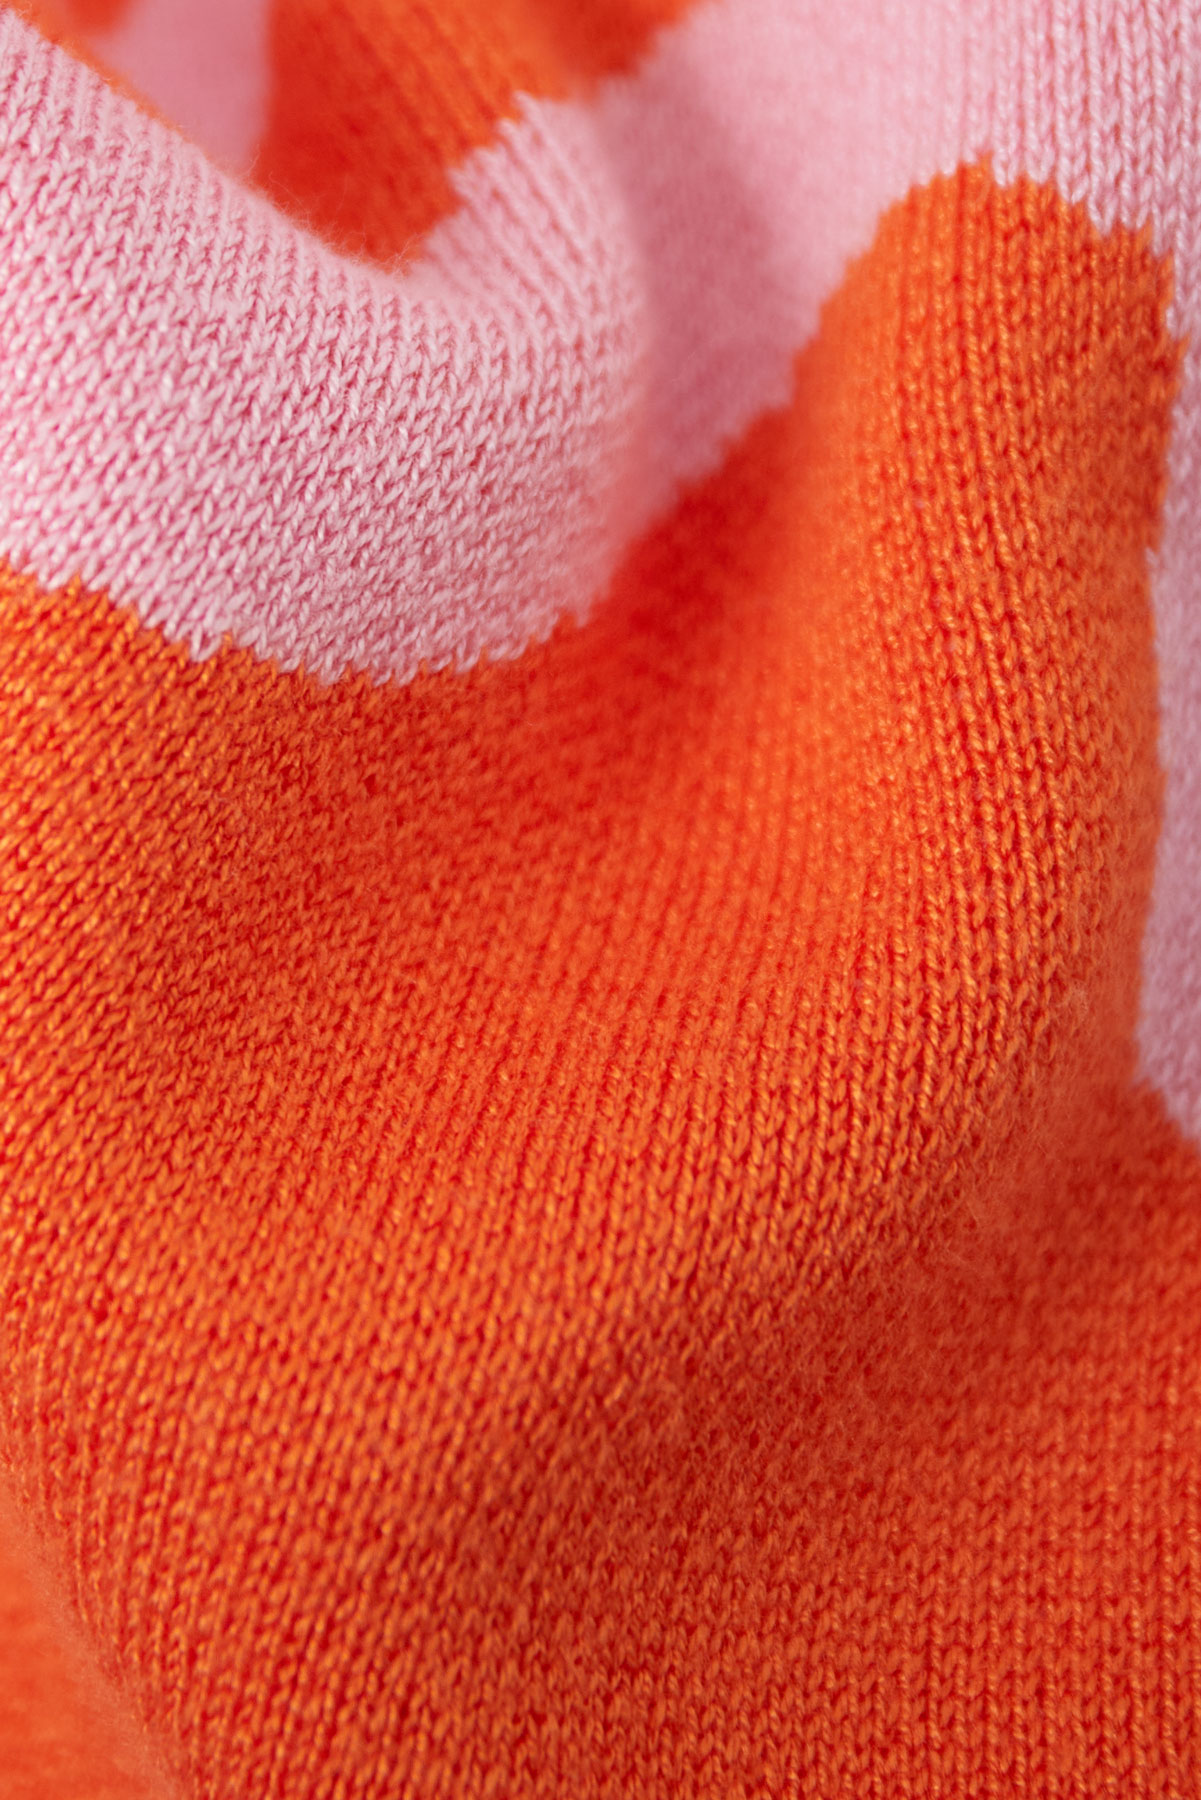 Pantaloni con stampa a righe organiche - arancione e rosa Immagine9